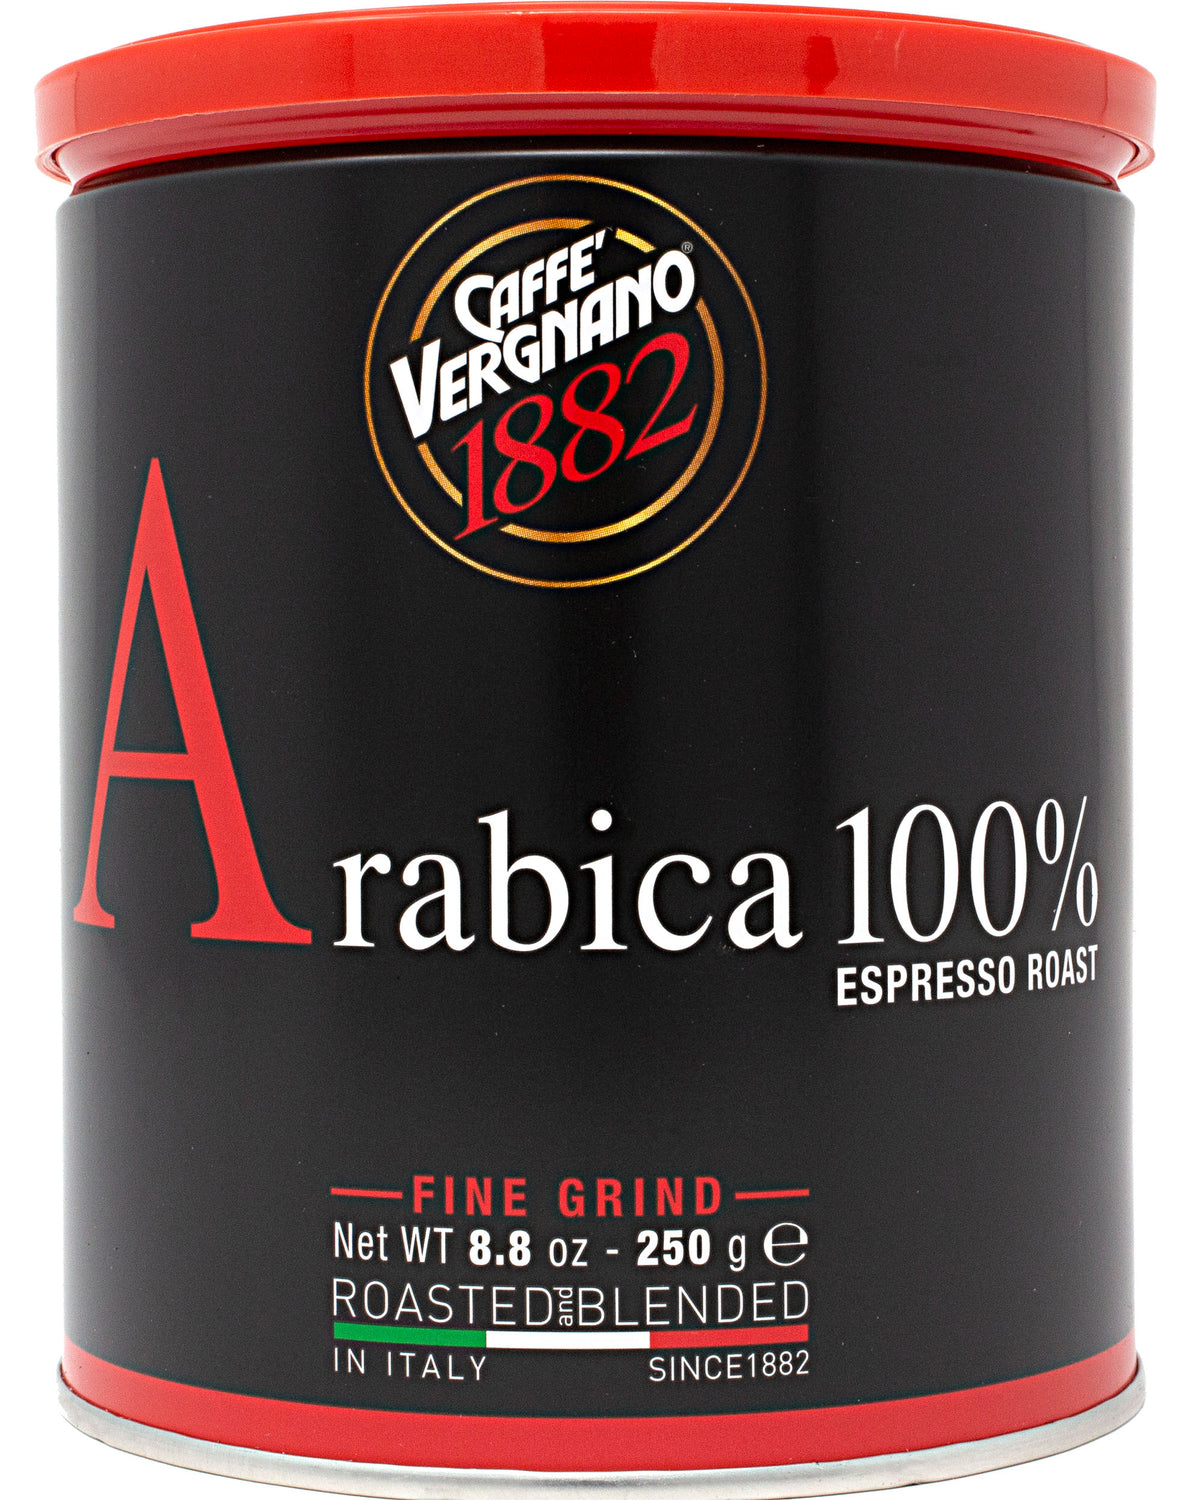 Caffe Vergnano Arabica 100% Espresso Roast (Italian Coffee for Espresso) -  8.8 oz / 250 g